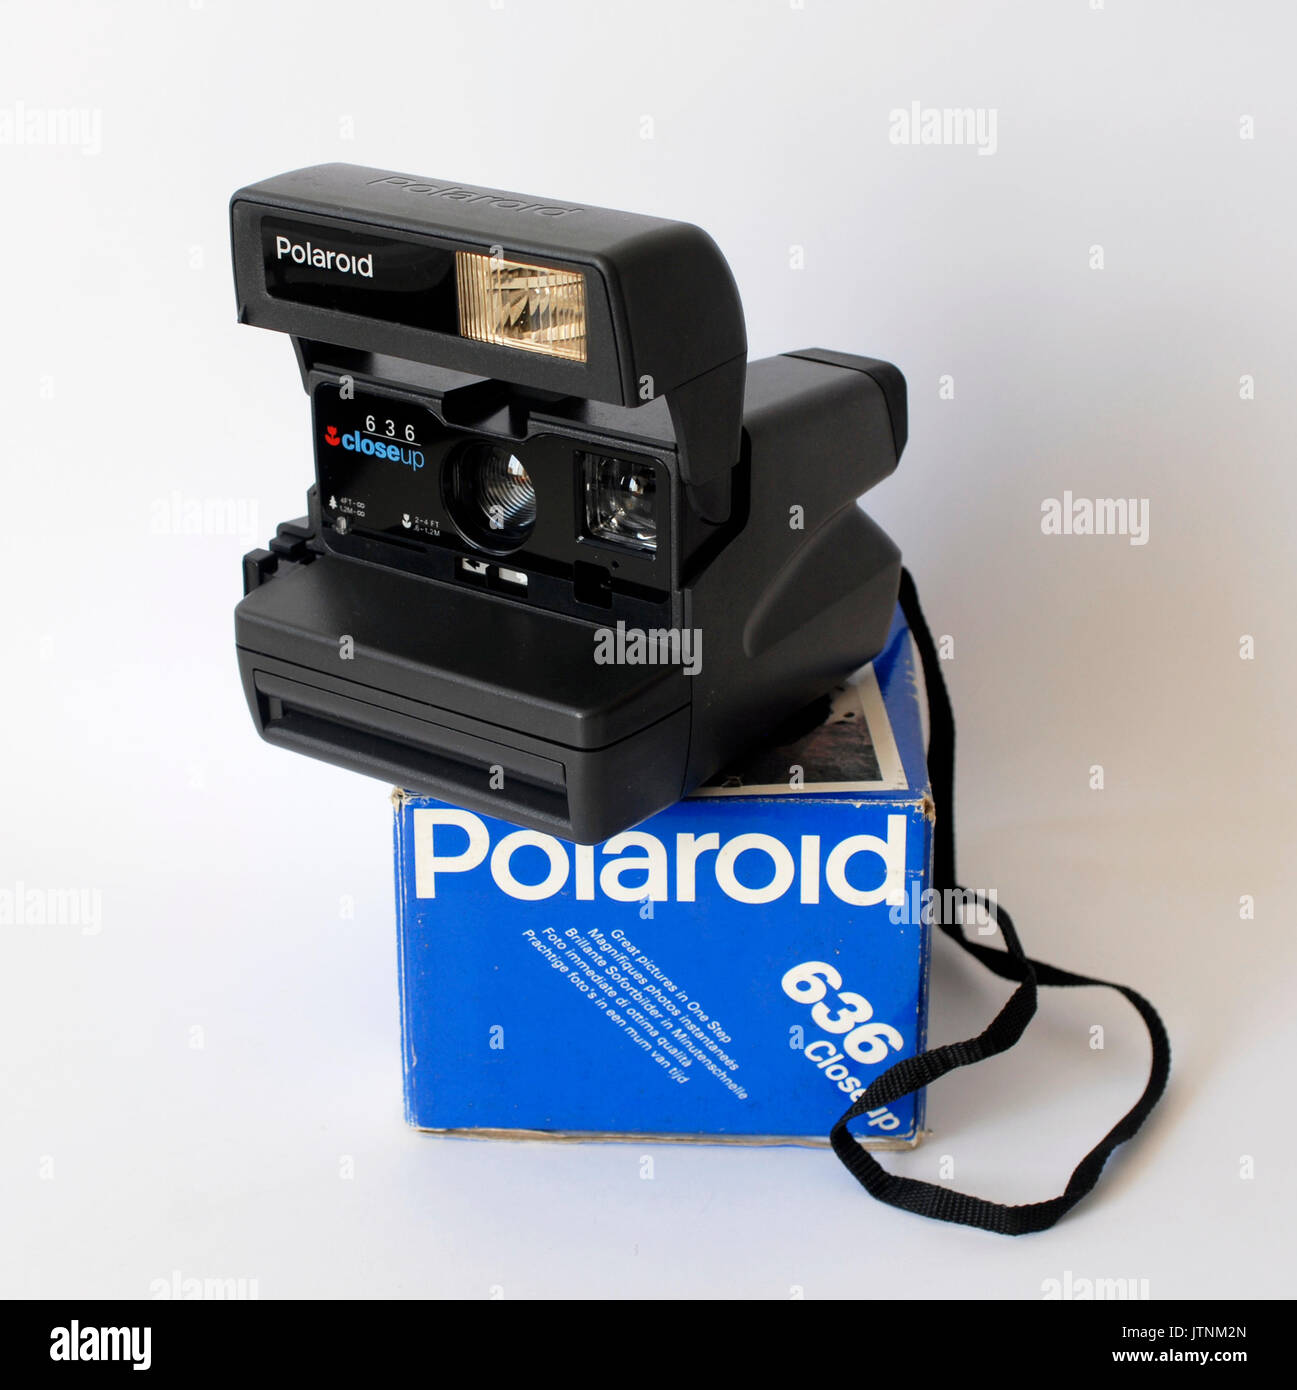 Vintage Foto Kamera Polaroid 636, hergestellt in Großbritannien  Stockfotografie - Alamy